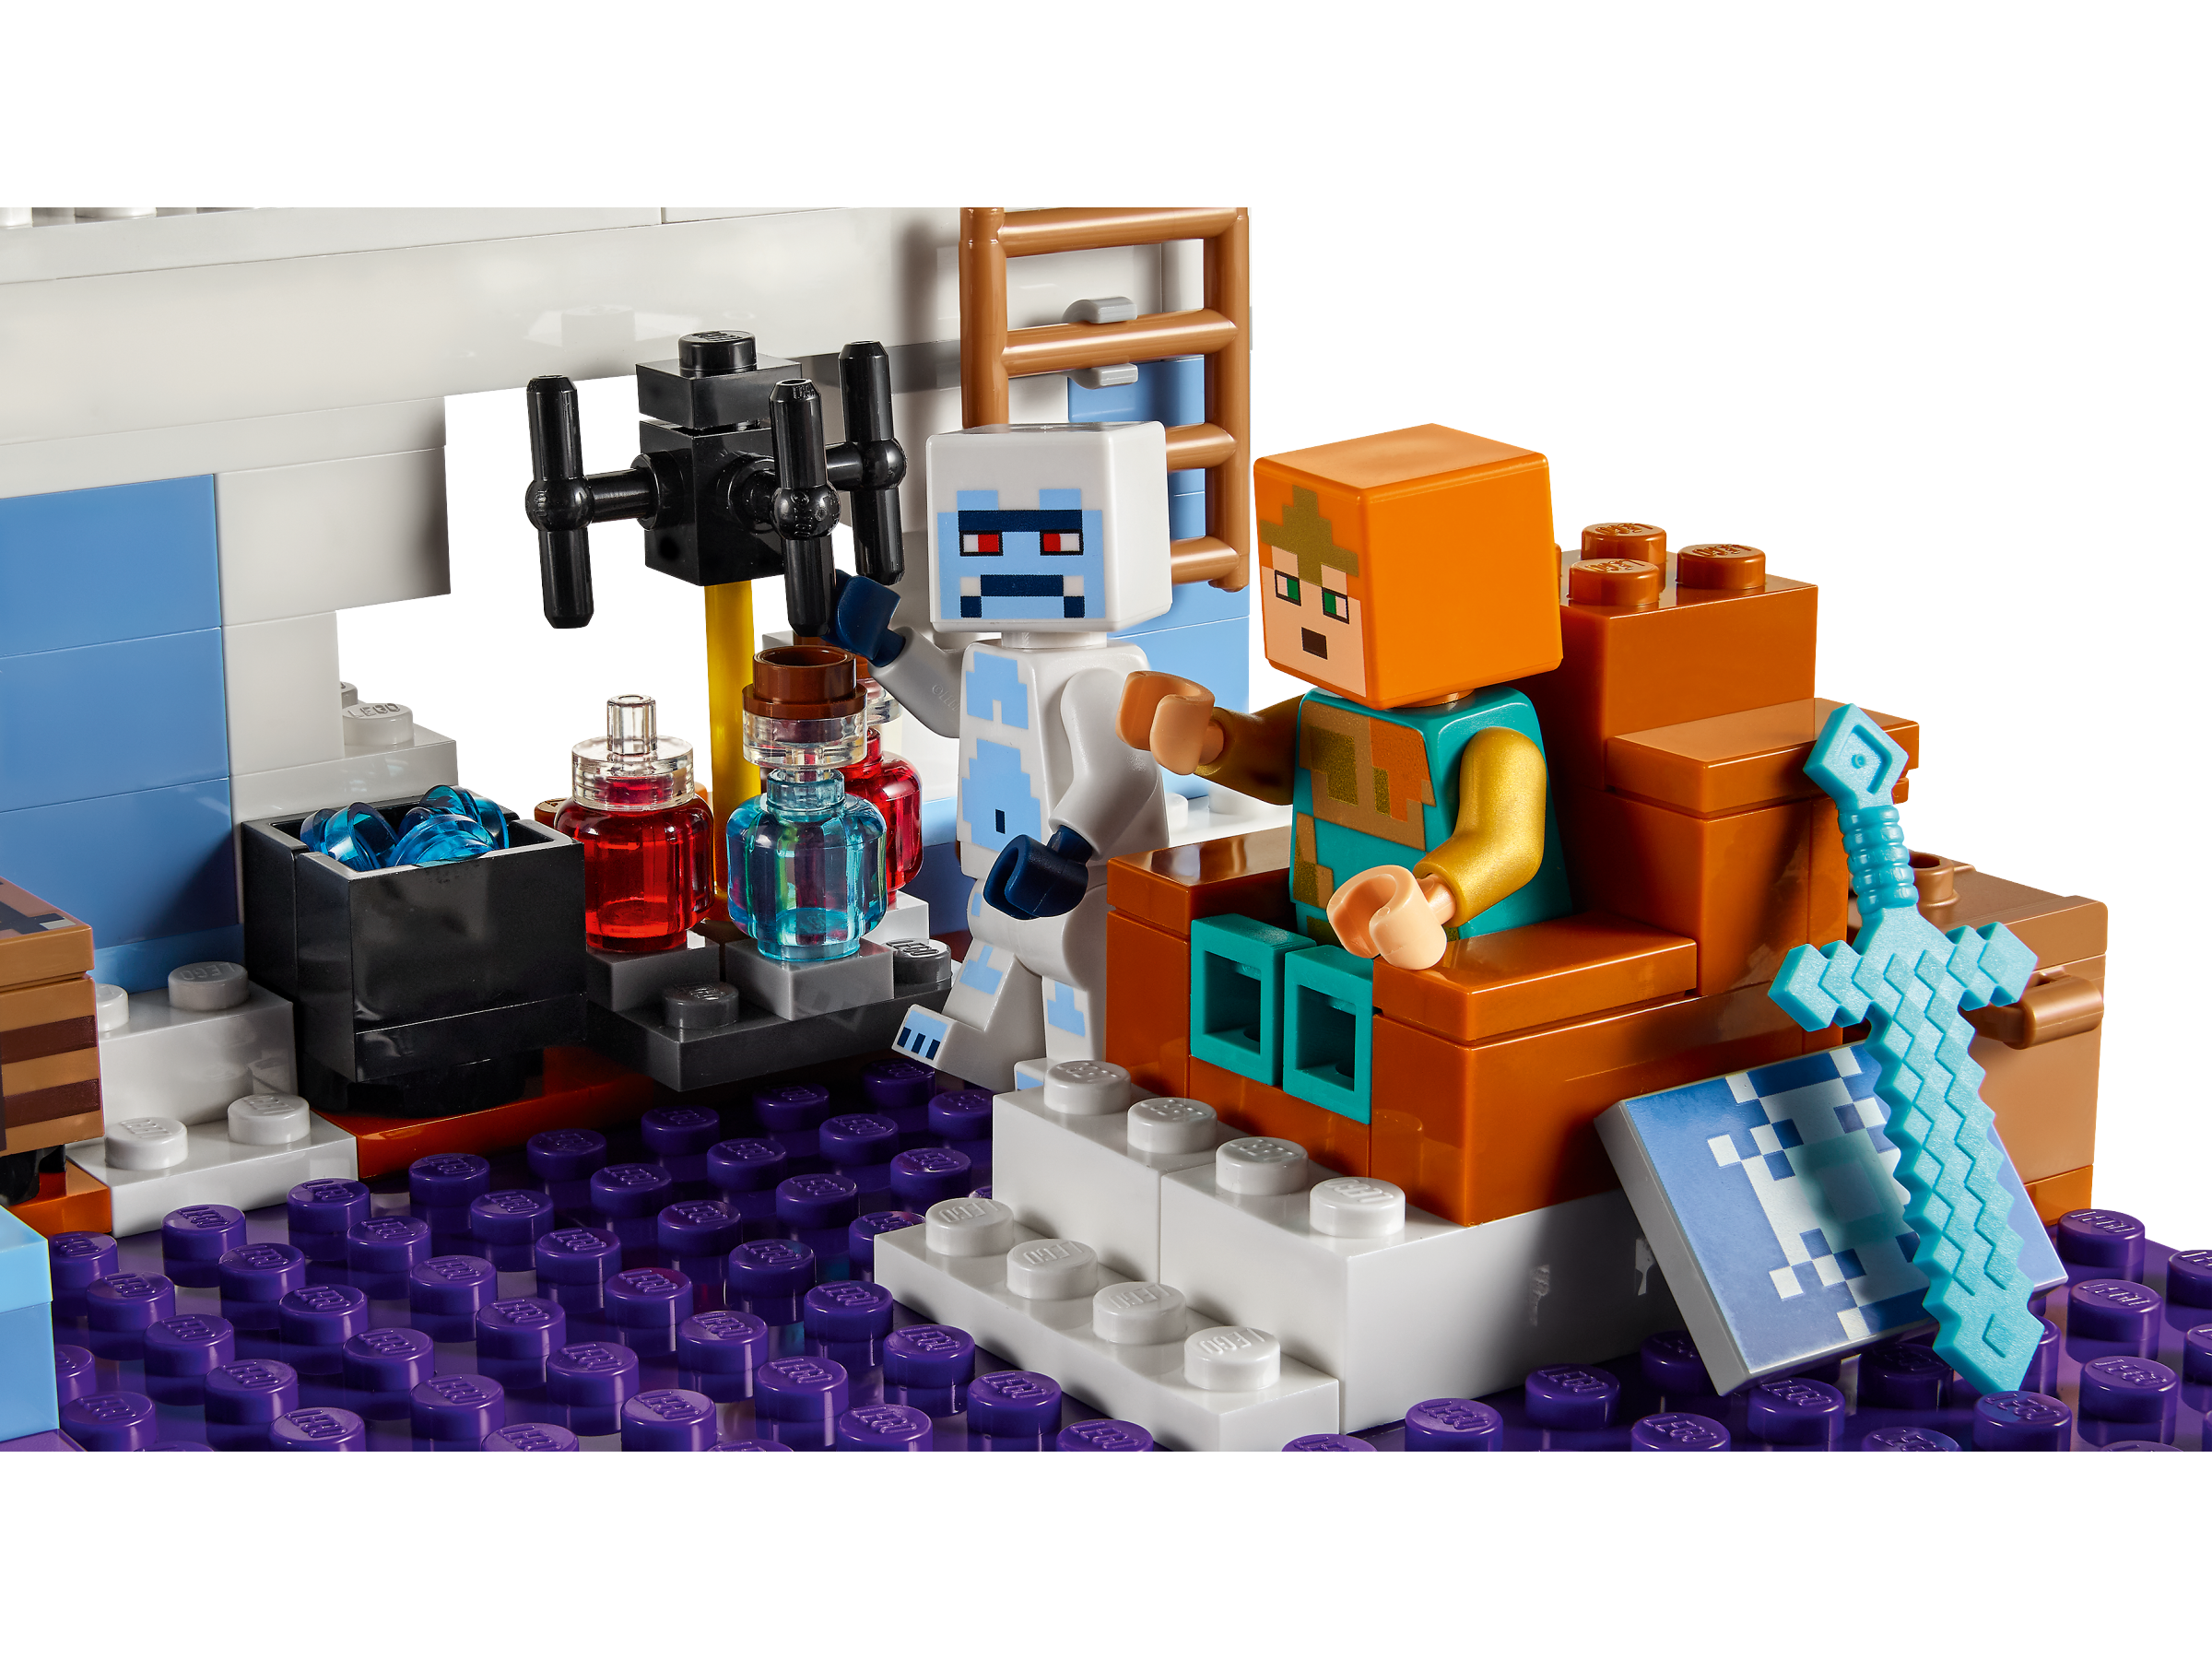 LEGO 21186 Minecraft Le Château de Glace, Jouet avec Épée en Diamant des 8  ans, avec Figurines de Squelette et Zombie